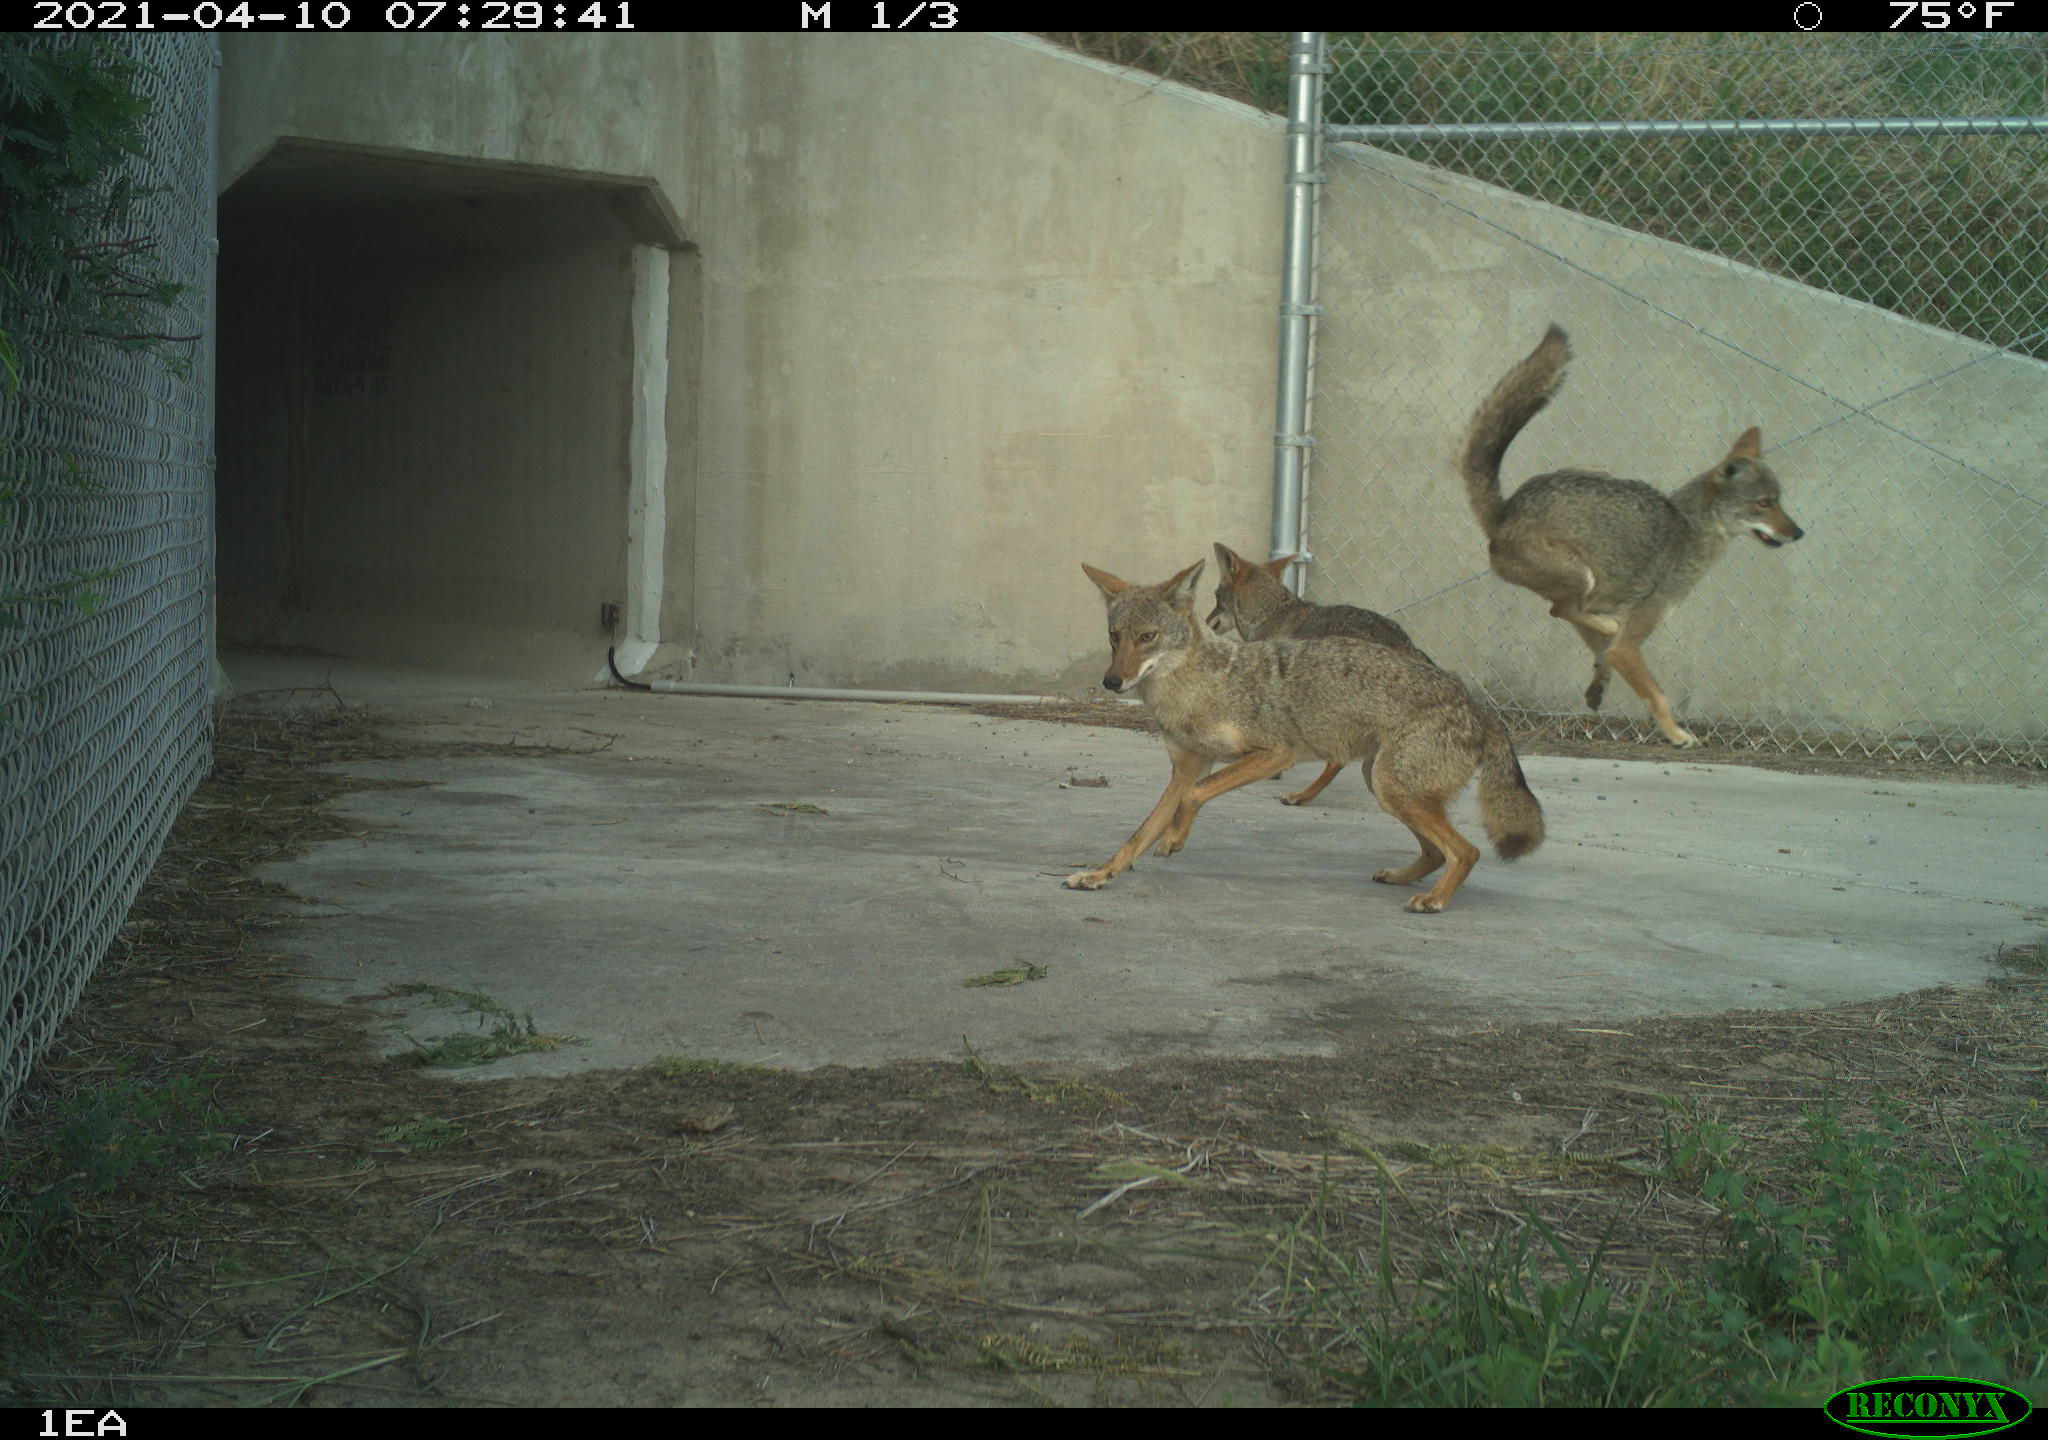 Coyote trio